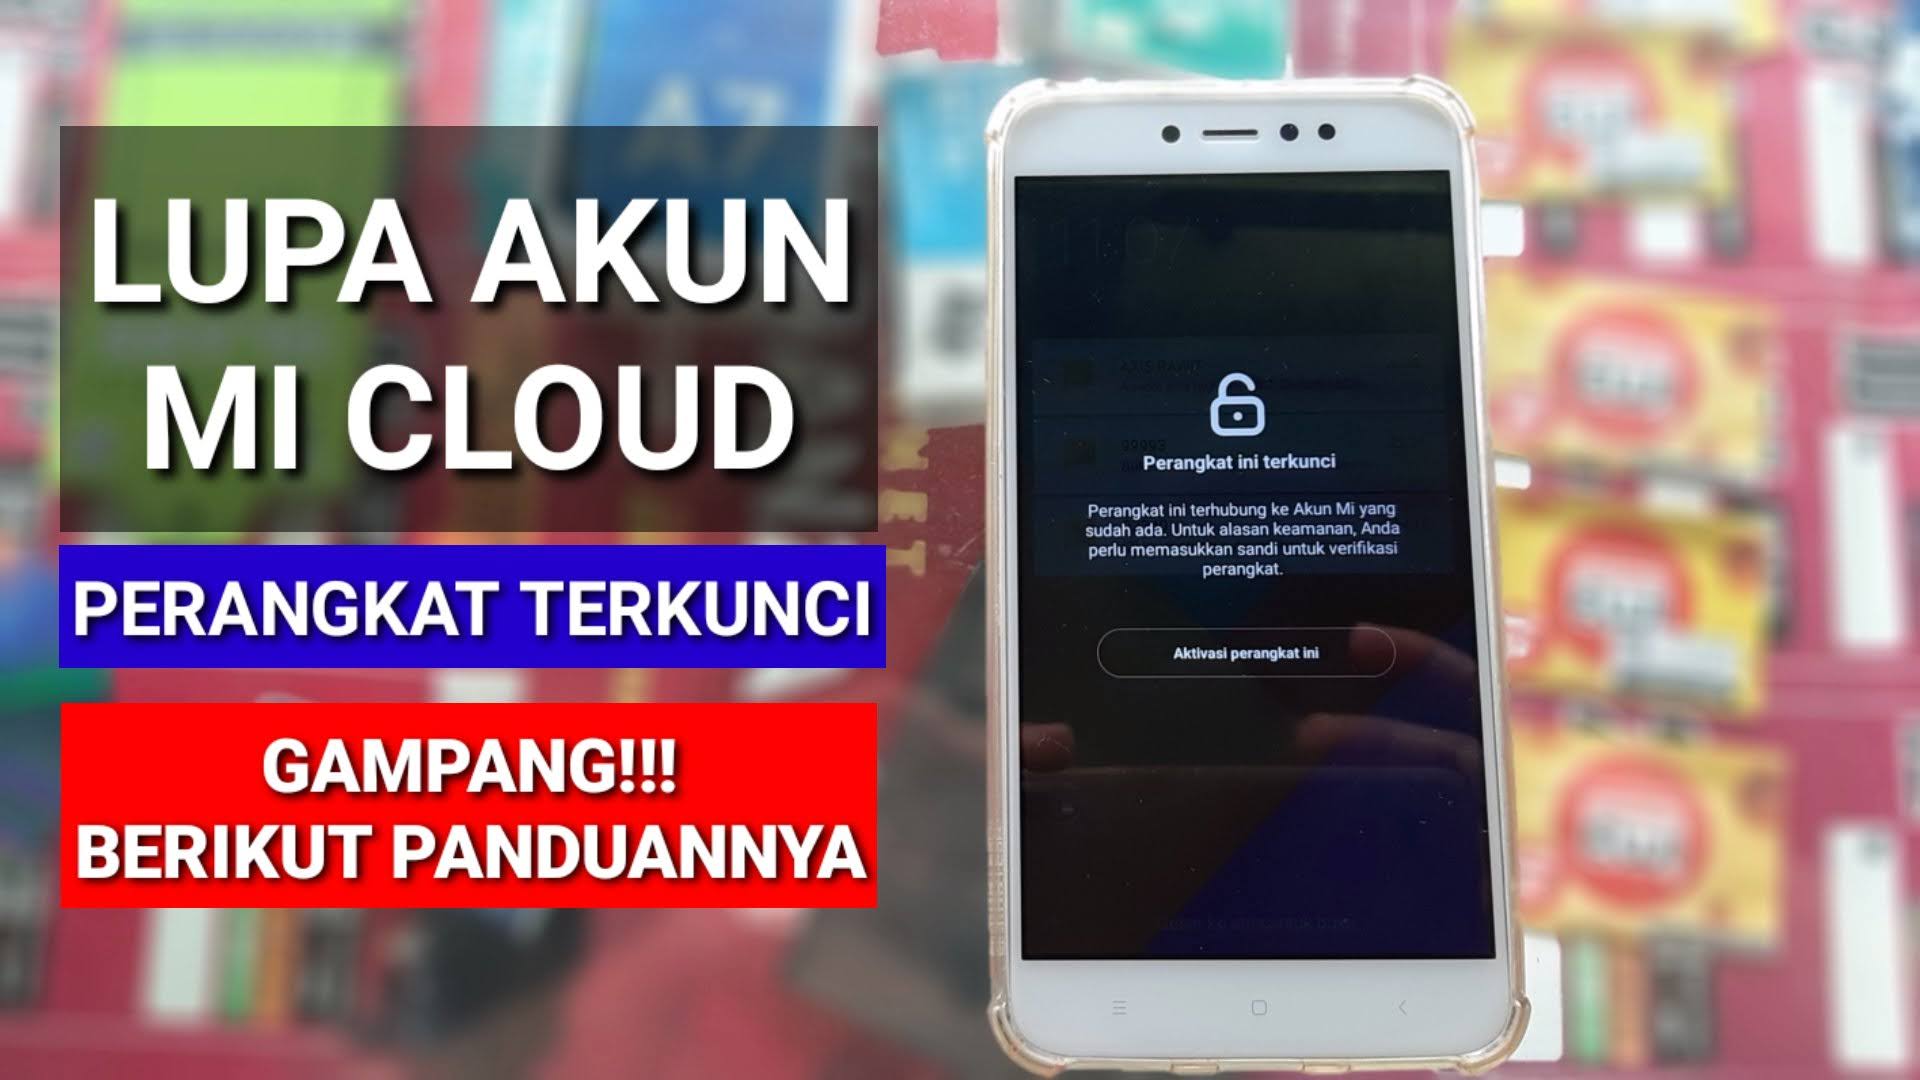 Mi Cloud Redmi Note 5a Ugg Gratis